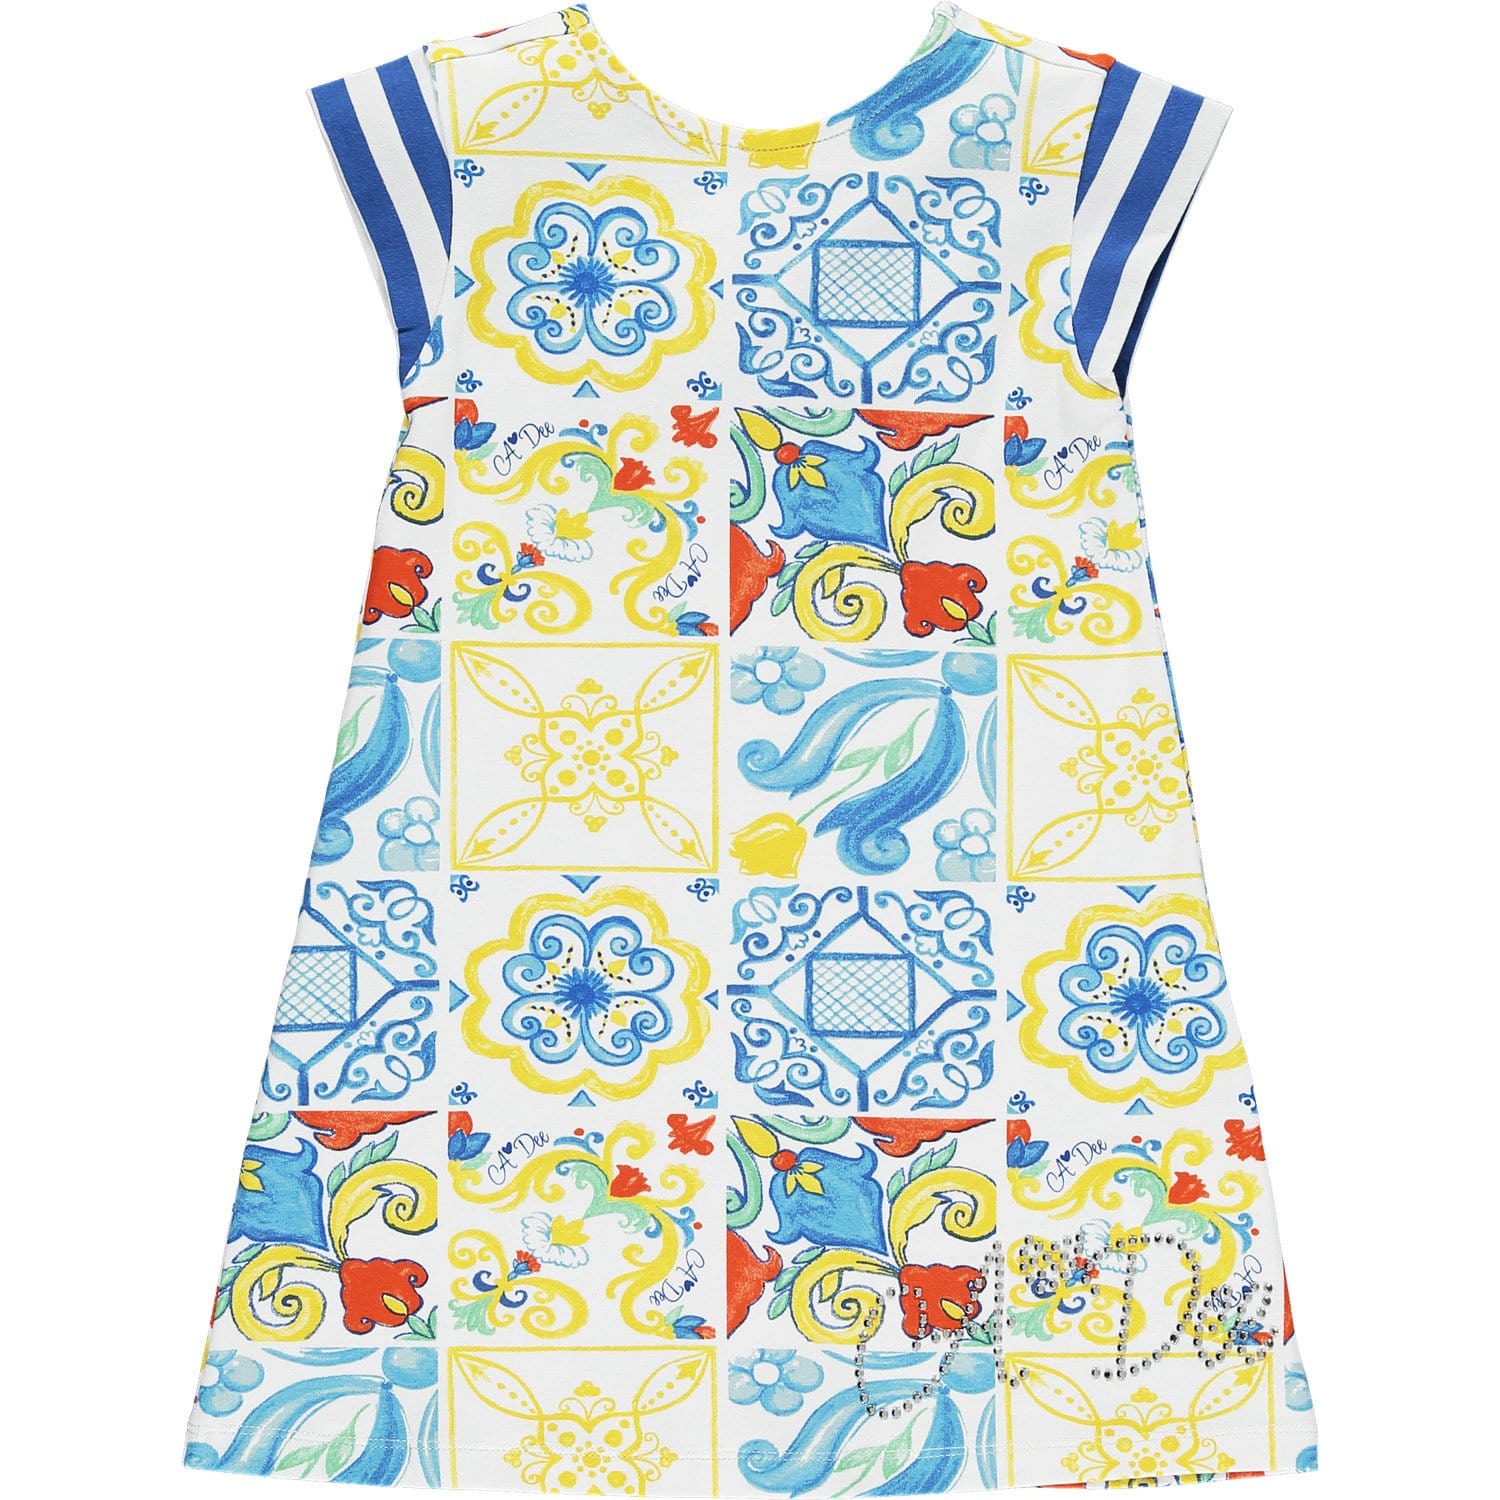 A DEE - Tile Print Jersey Dress